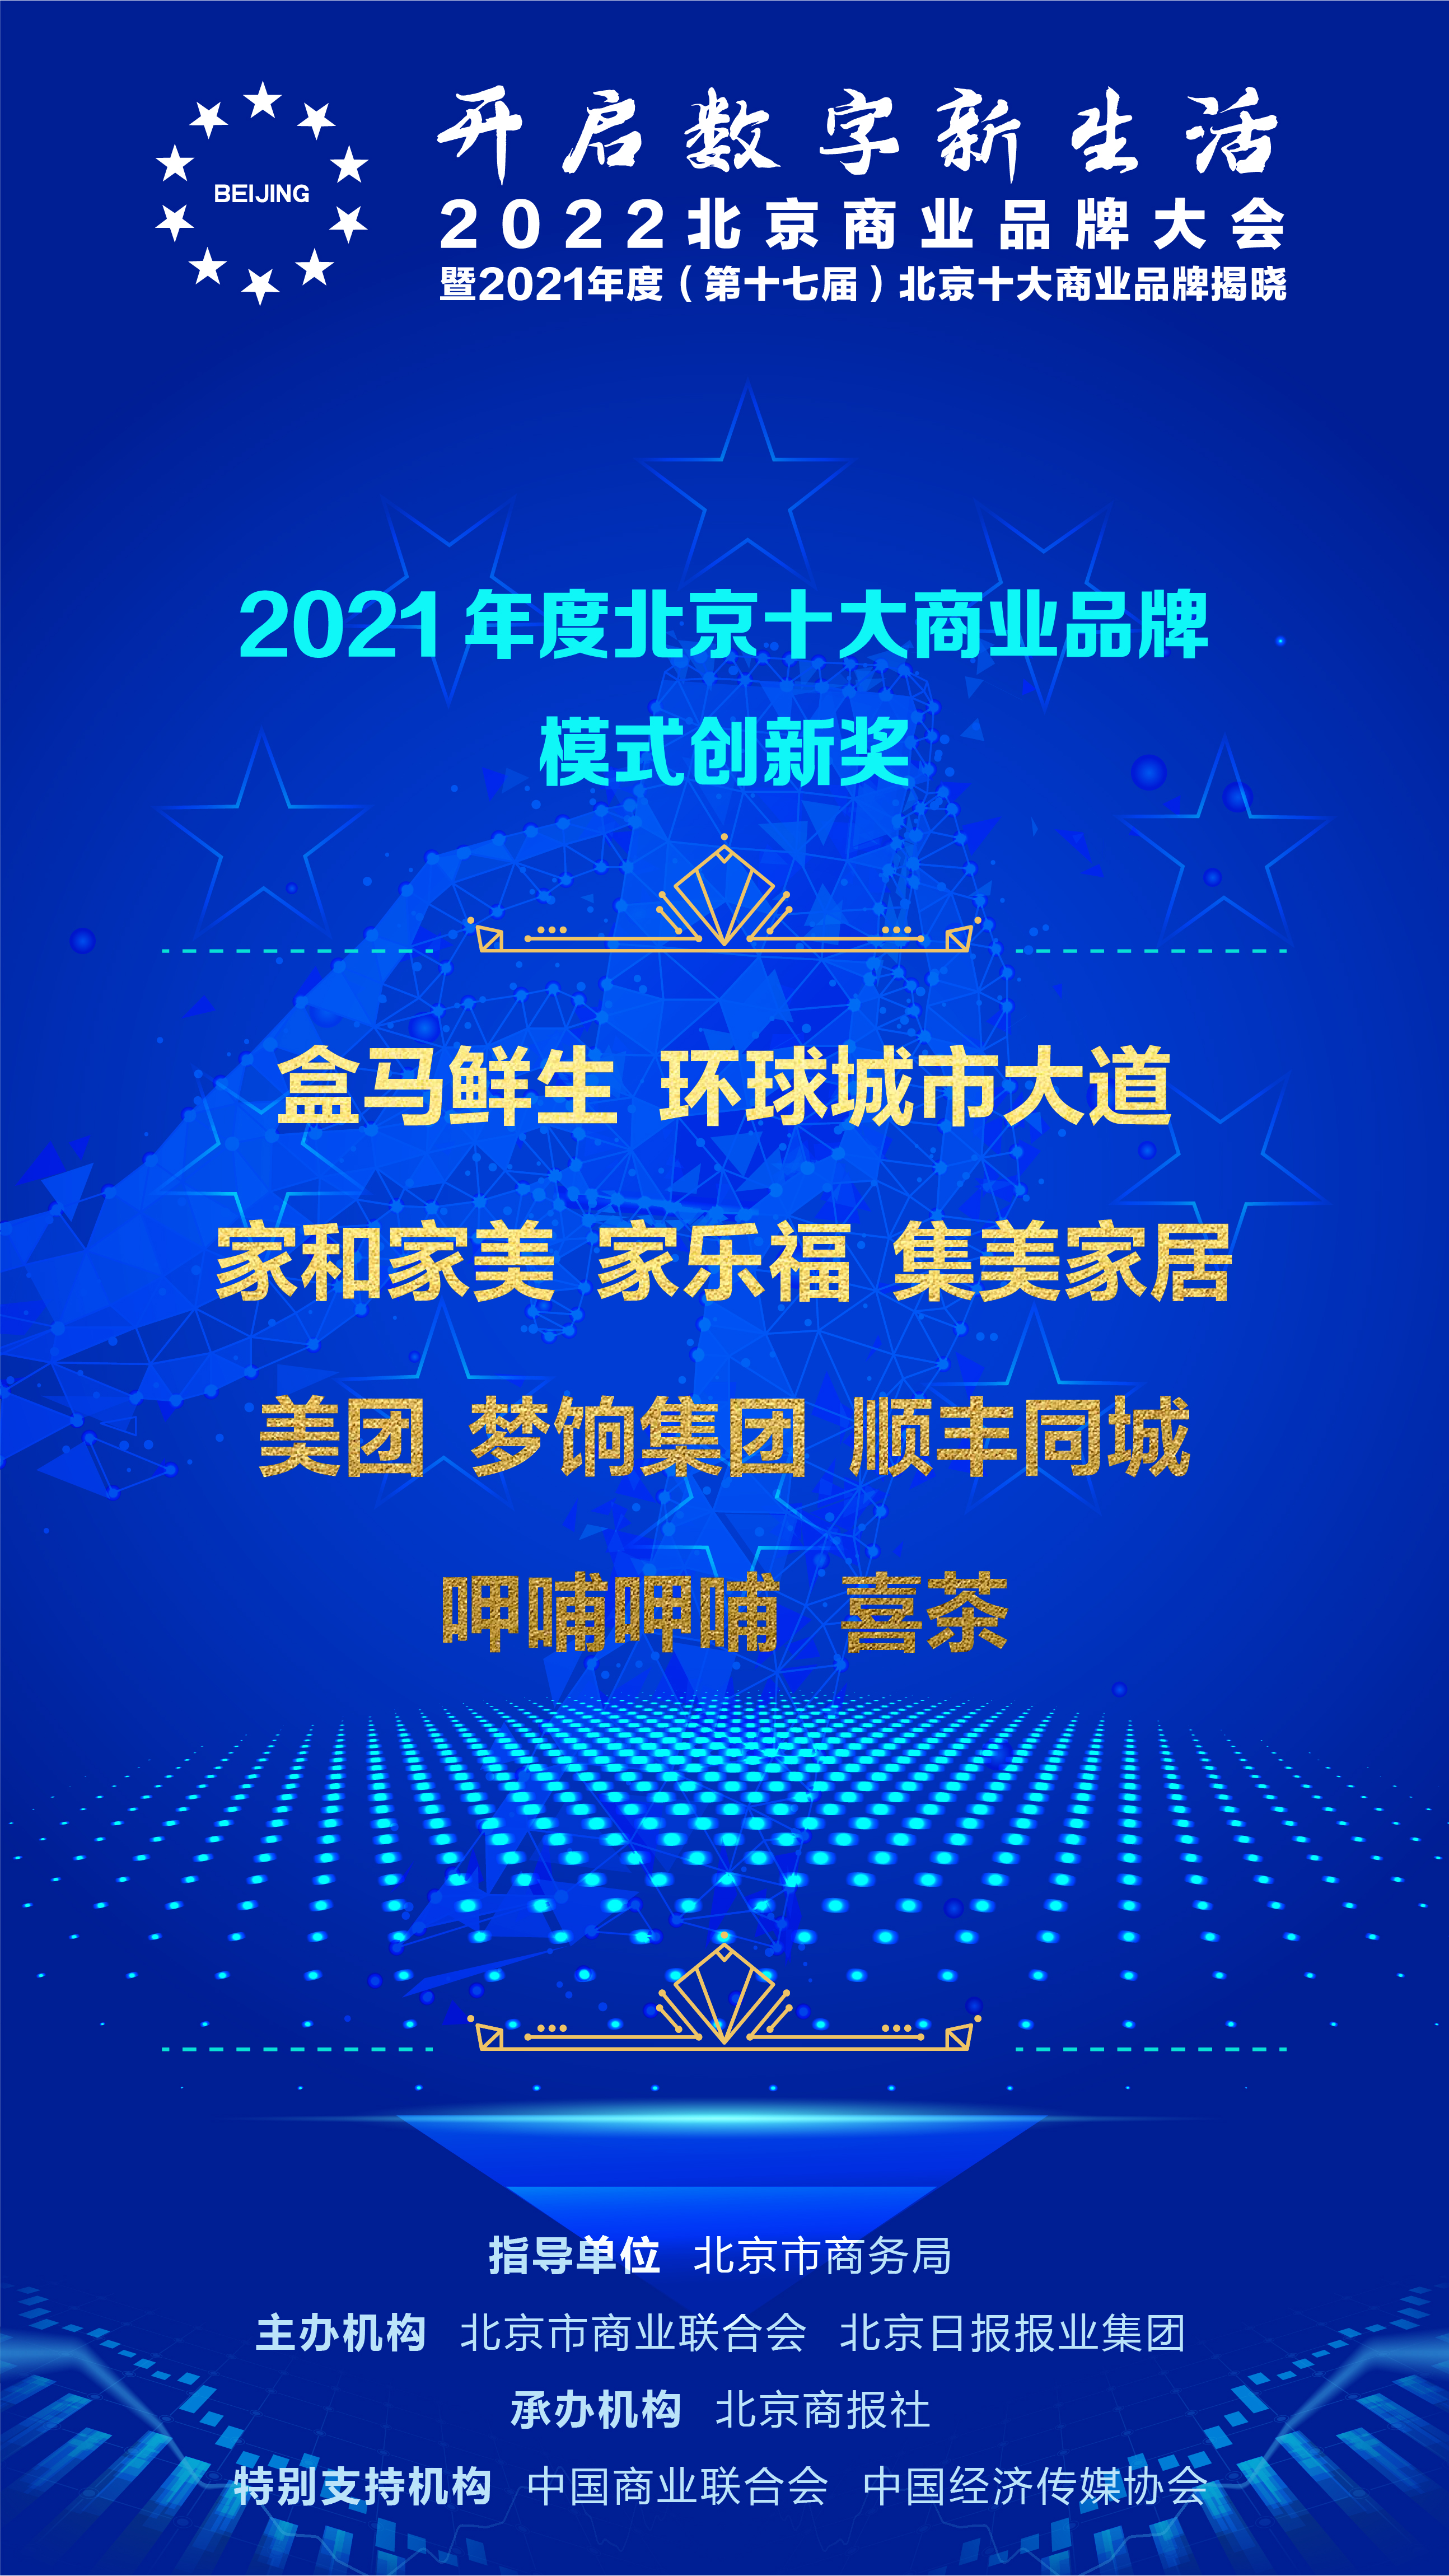 刚刚｜家和家美荣获2021年度北京十大商业品牌模式创新奖